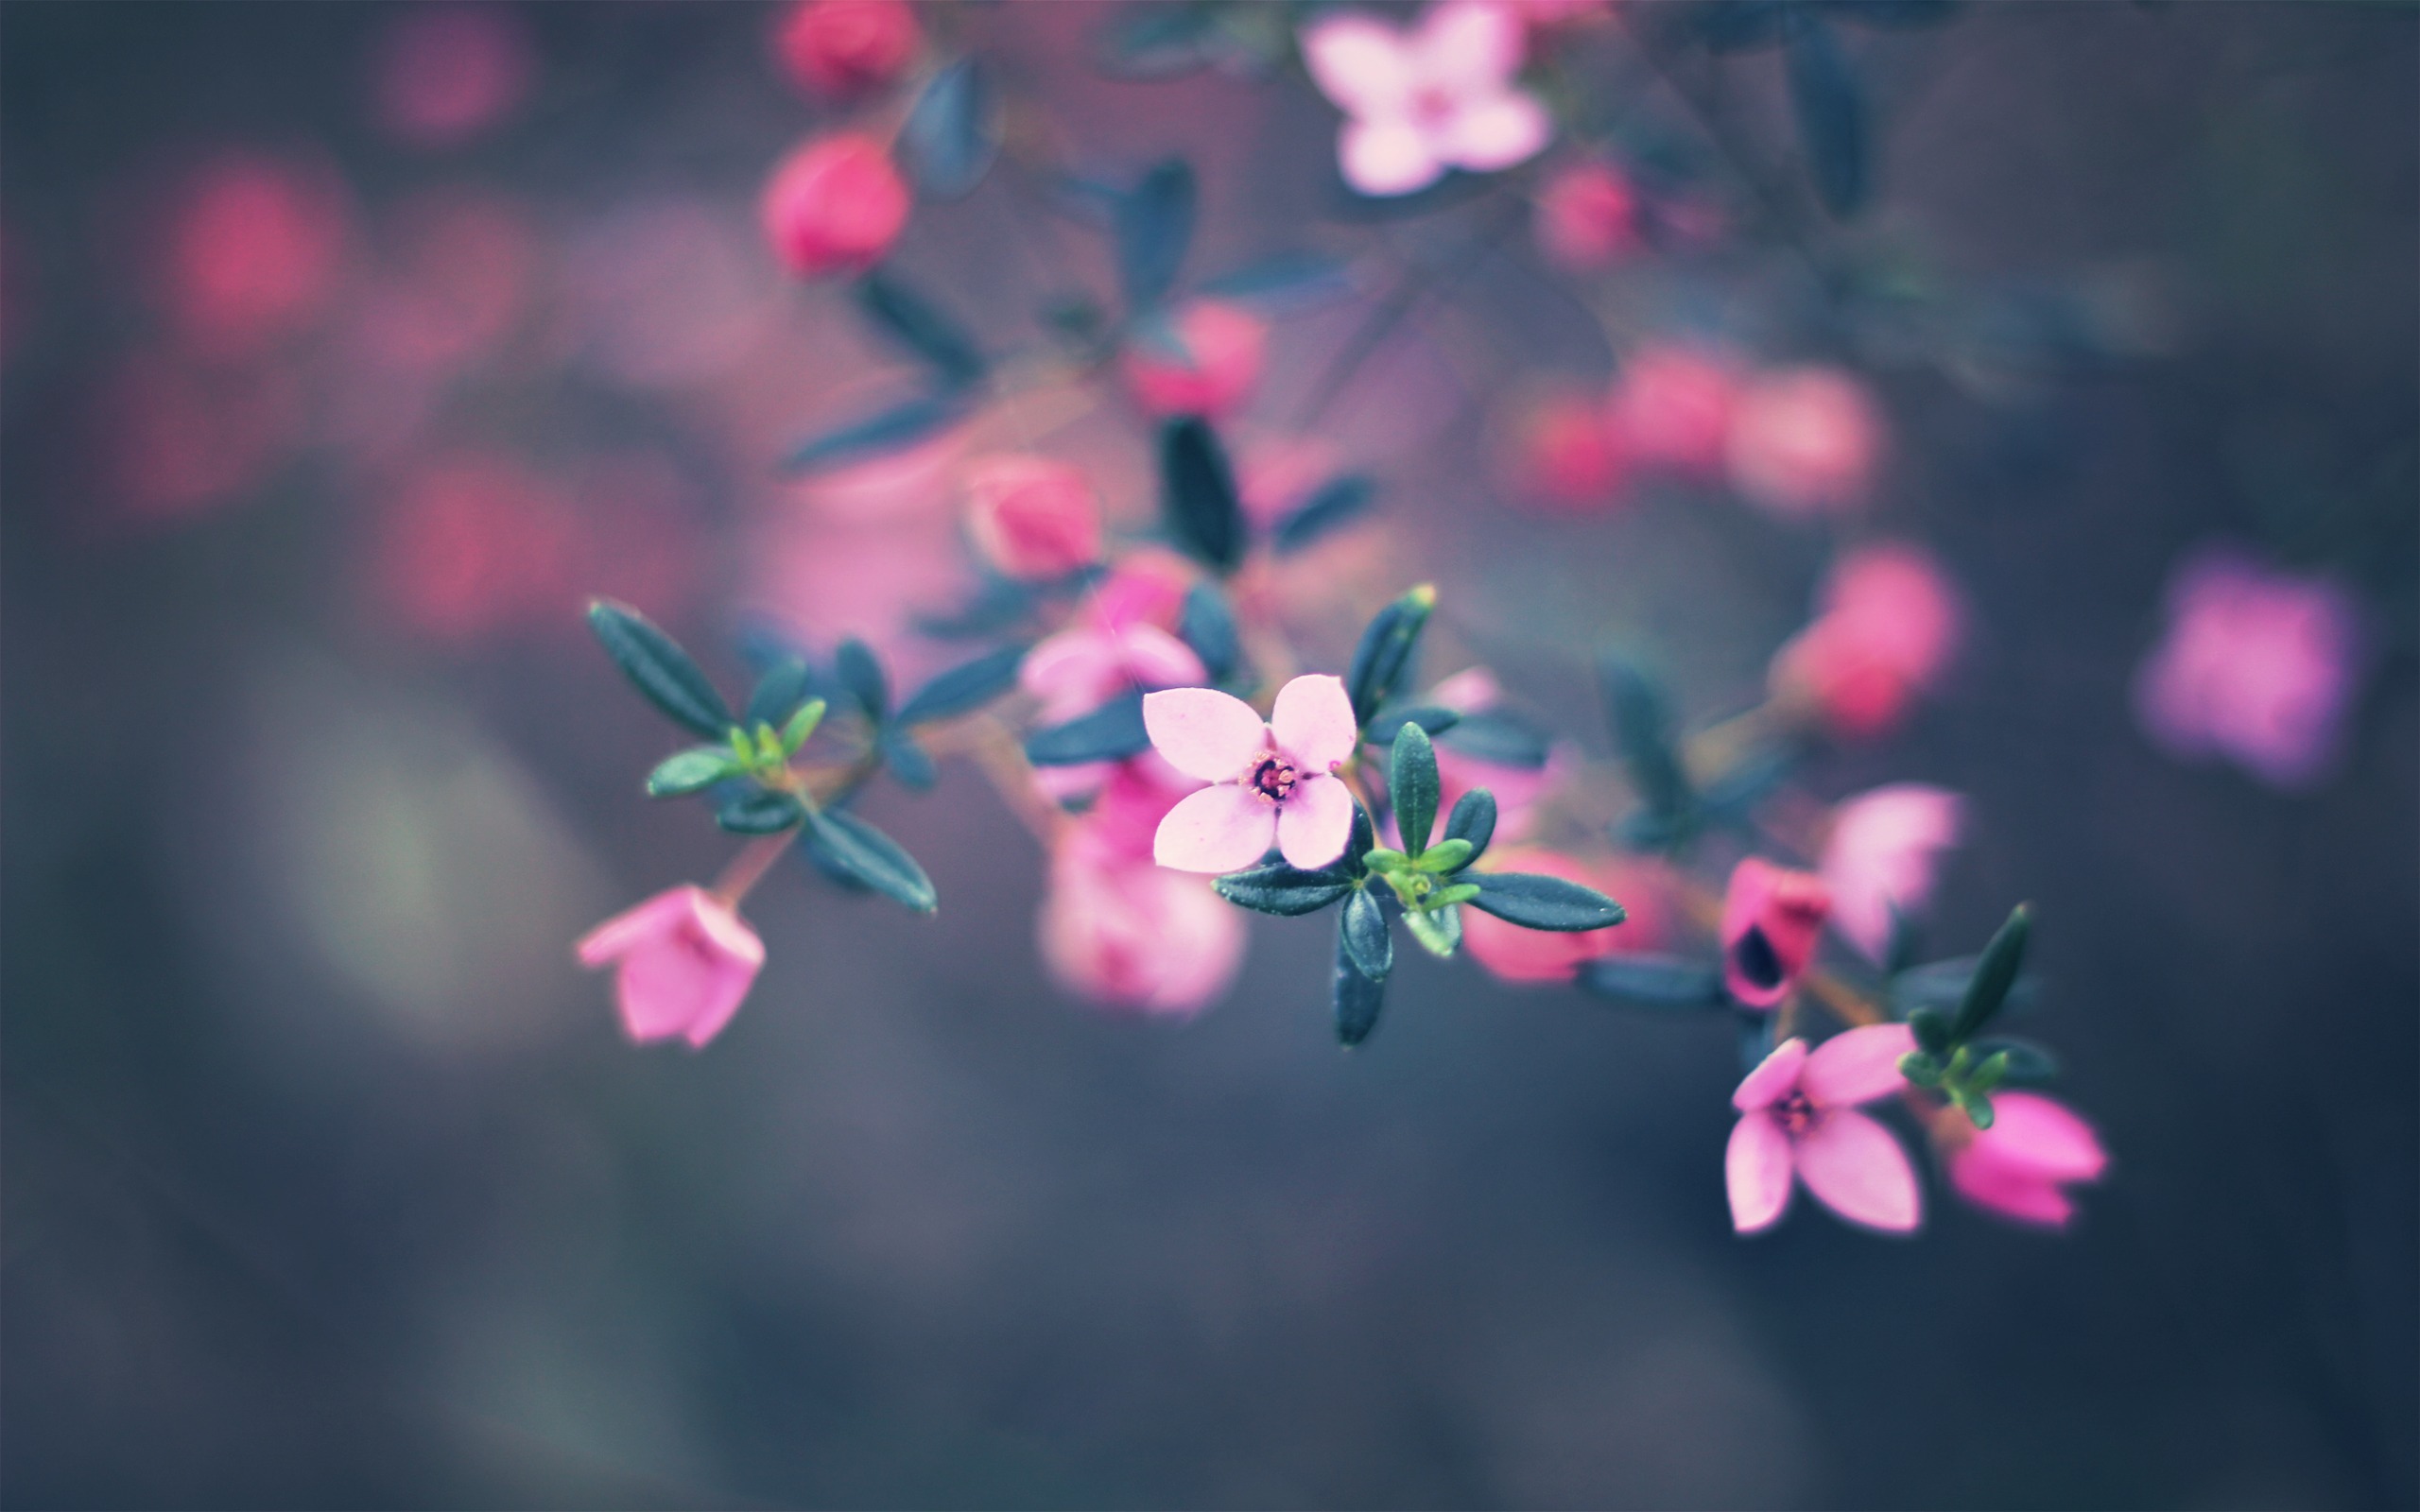 Обои на айфон март. Розовые цветы. Маленькие цветочки. Мелкие розовые цветы. Нежные весенние цветы.